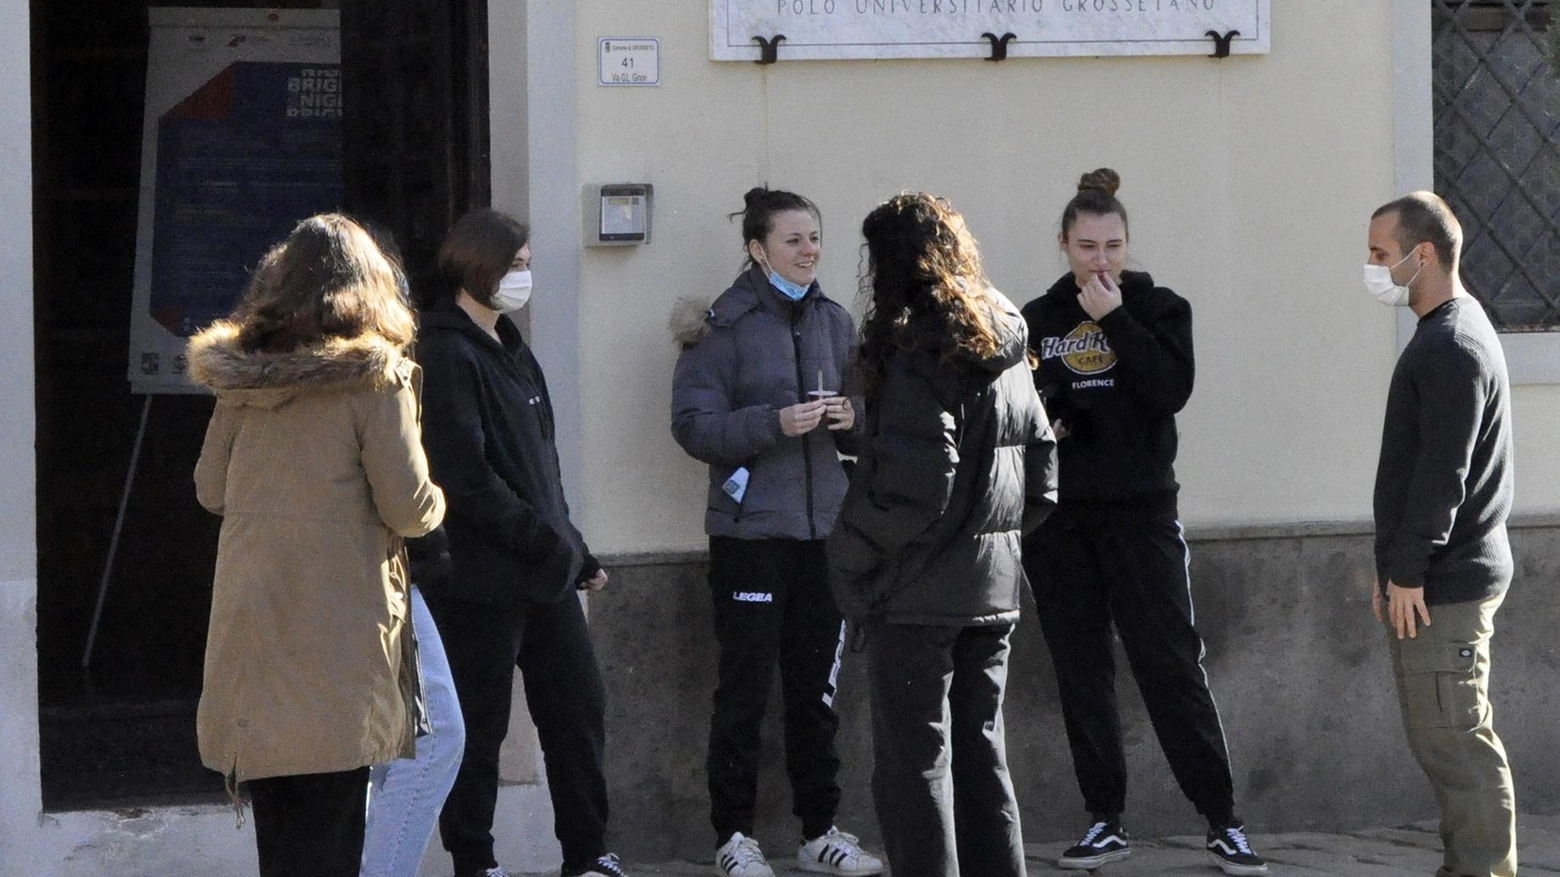 L'Università di Siena presenta a Grosseto l'Open Day per studenti e famiglie, offrendo informazioni sui corsi di laurea e le opportunità professionali. Evento di orientamento con sessioni mattutine presso la sede di via Ginori 43.